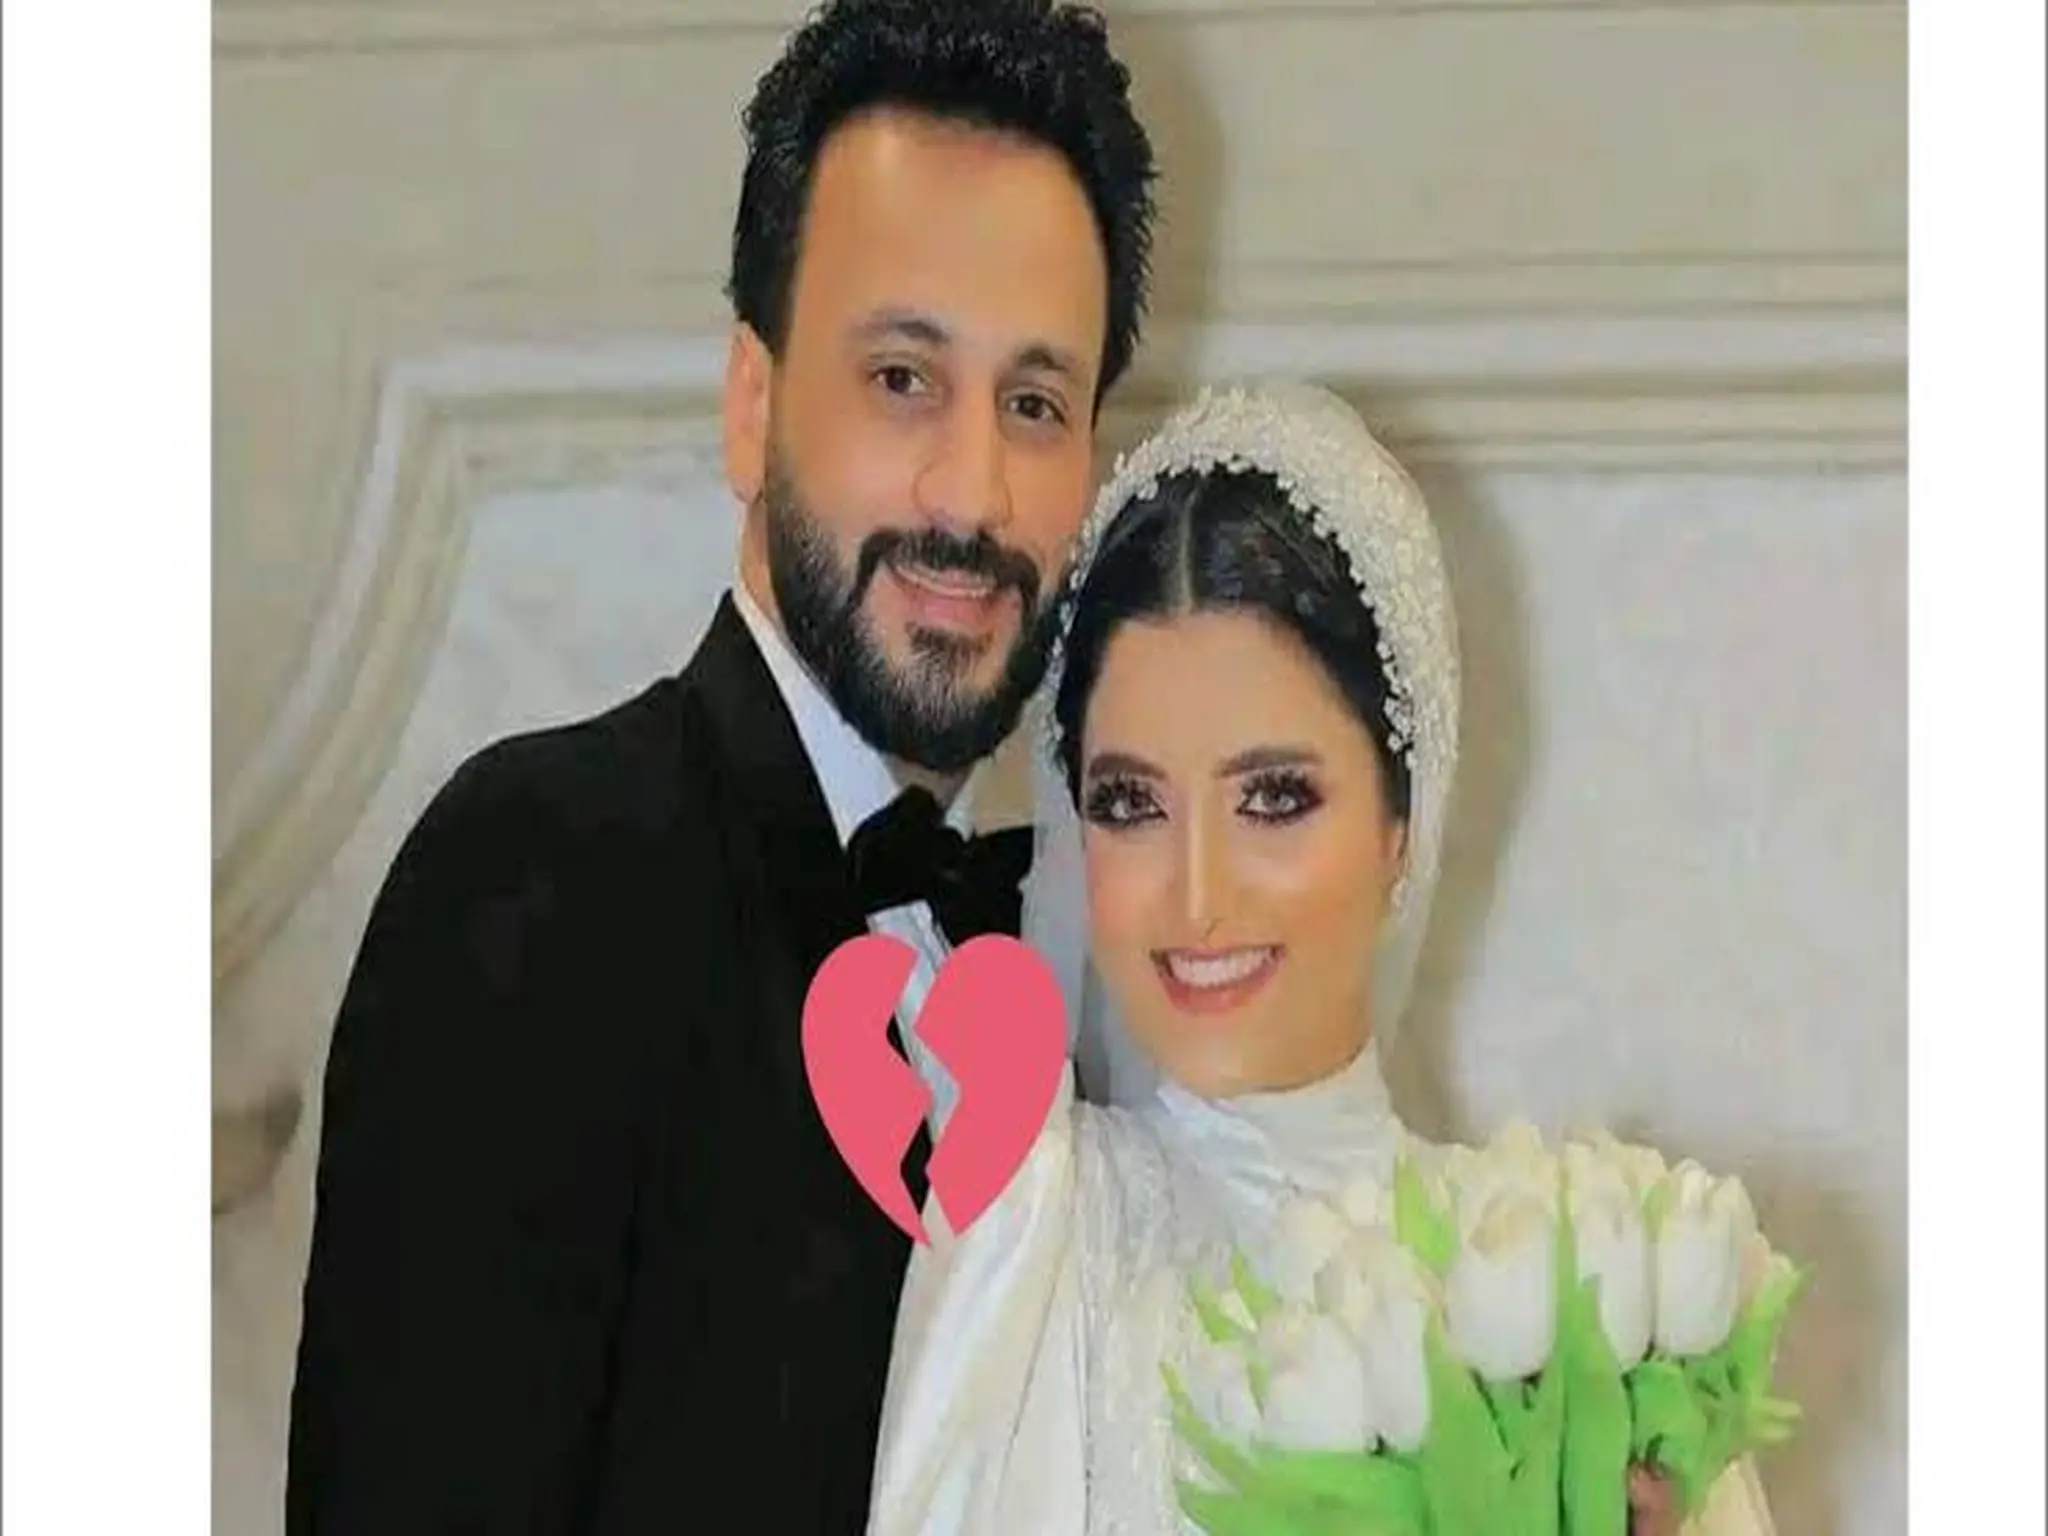 سبب إنفصال البلوجر أحلام عن زوجها مصمم الأزياء "أحمد العجمي"